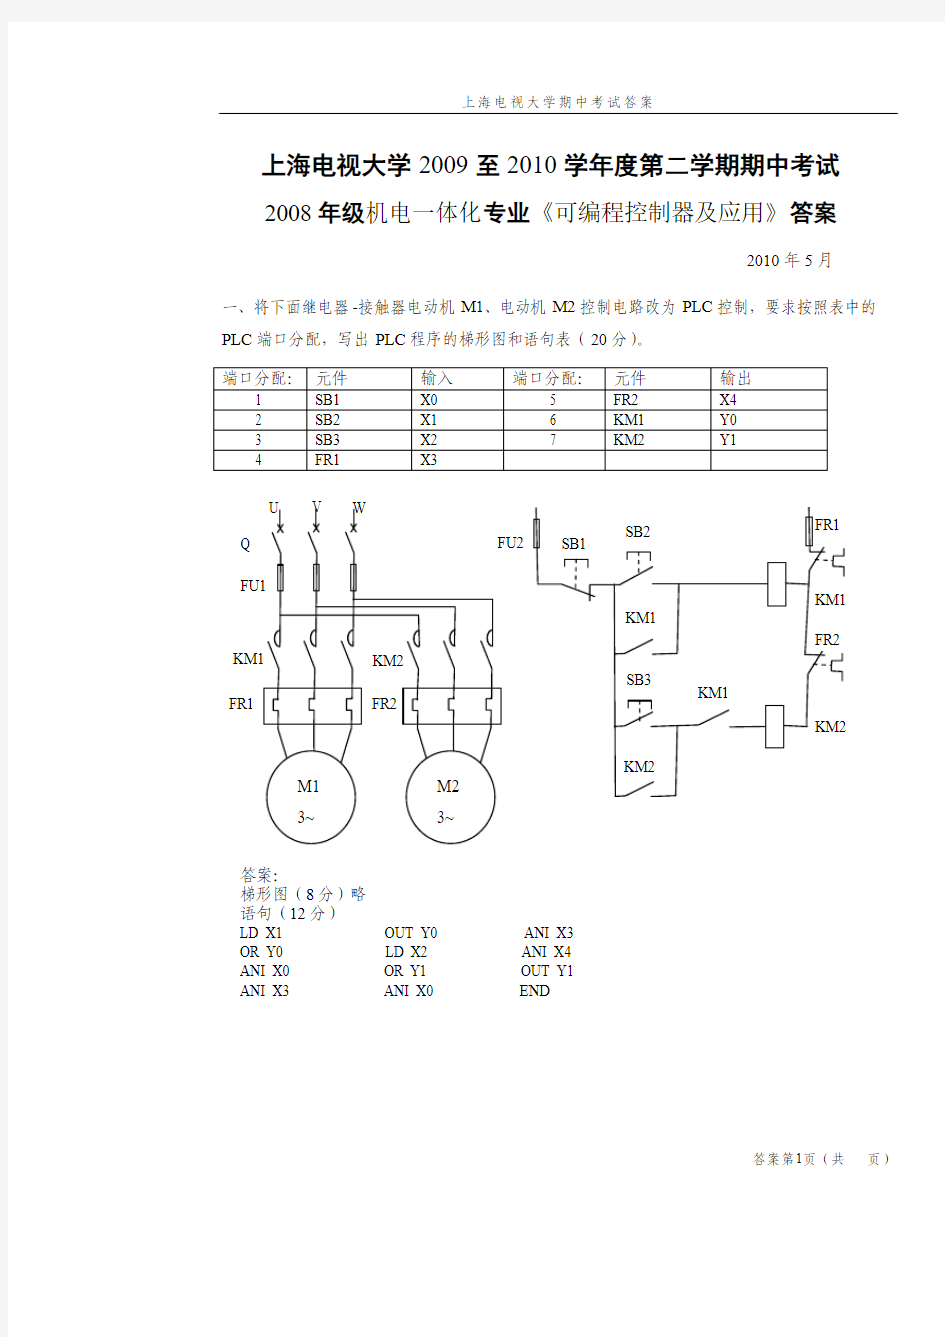 上海电大2009-2010学年度机电一体化可编程控制器第二学期期中考试答案